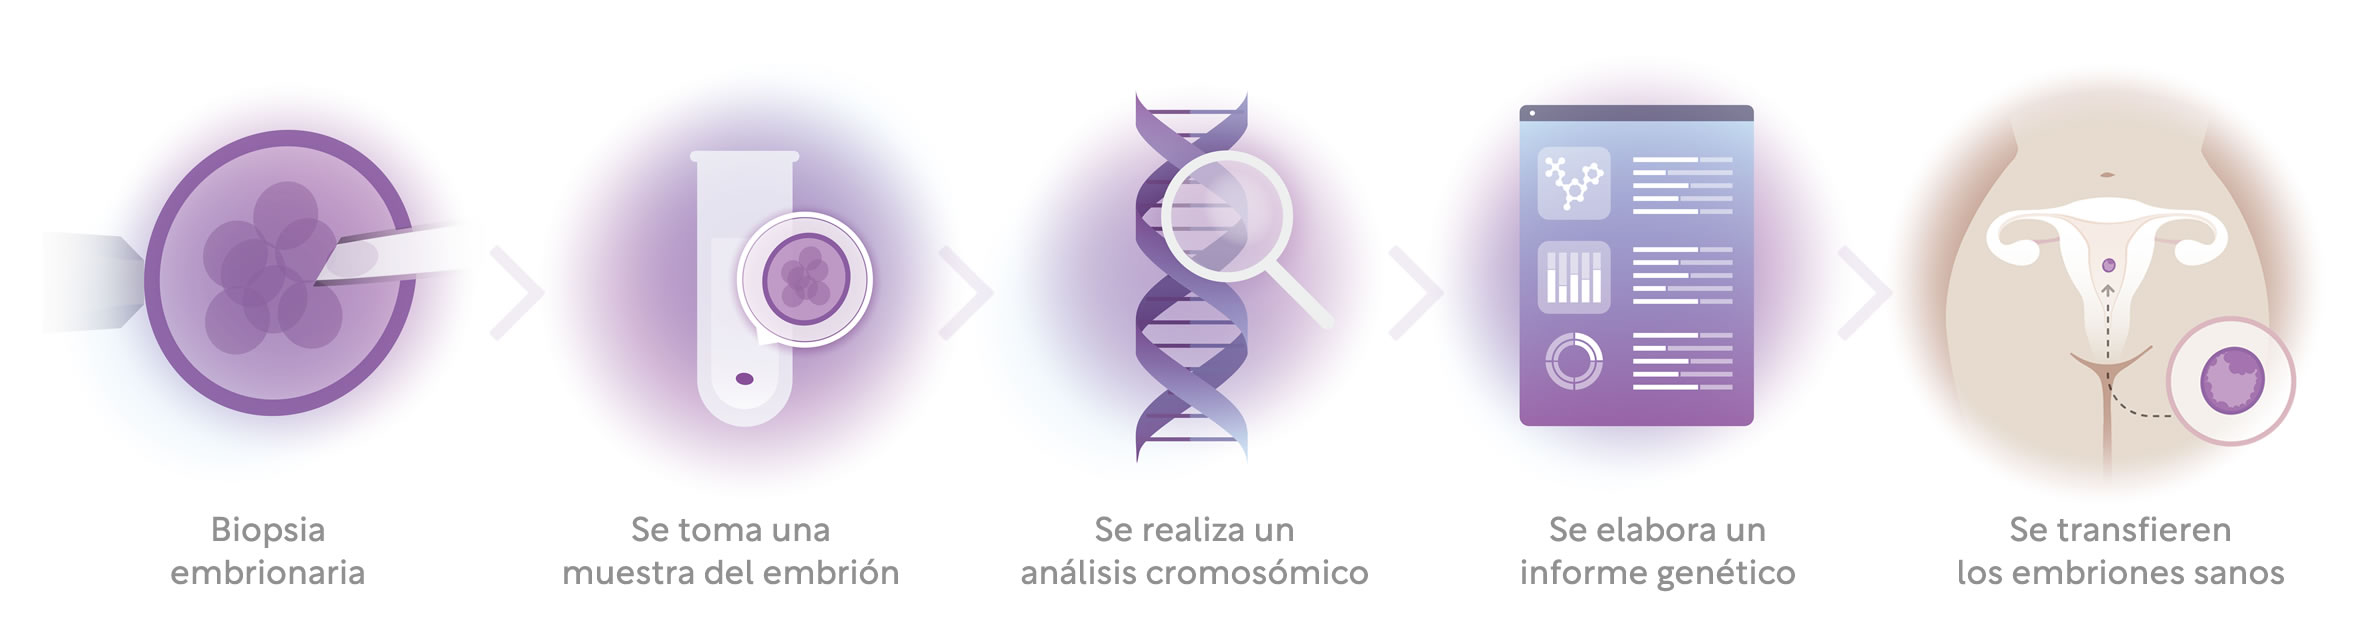 Infografía de cómo se realiza el Test Genético Preimplantacional: Primero se realiza una biopsia embrinal, luego se coge una muestra del embrión y se efectúa un análisis cromosómico. Posteriormente se elabora un reporte genético y se transfiere el embrión sano.